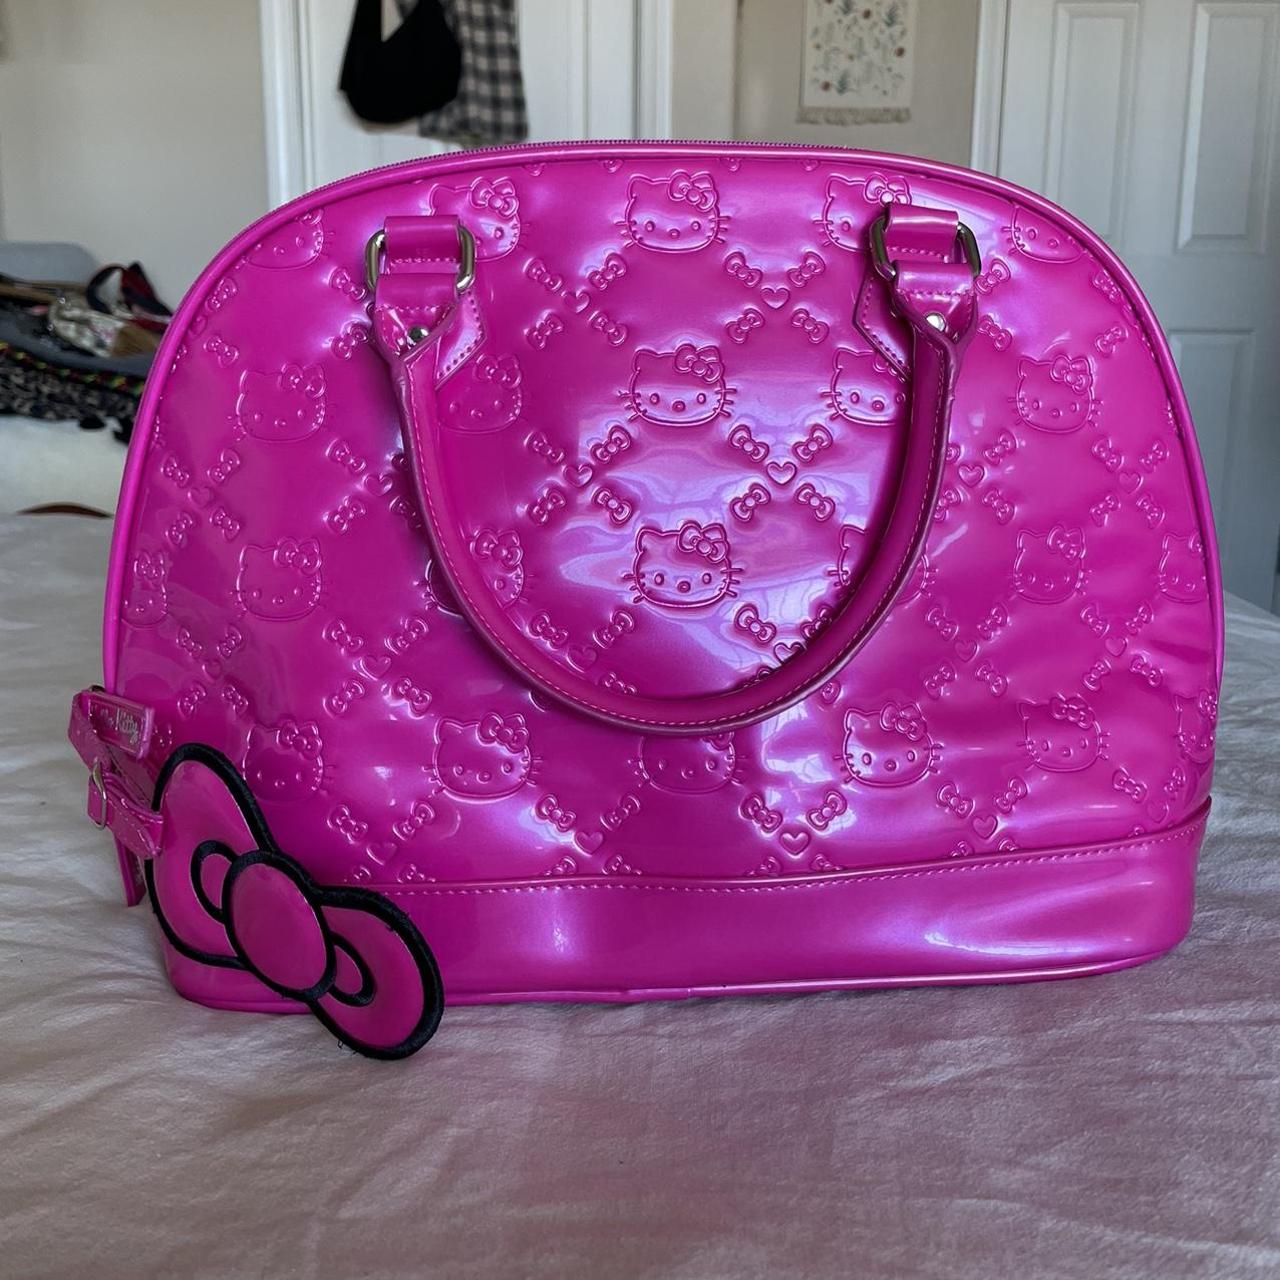 Loungefly Hello Kitty Handbag